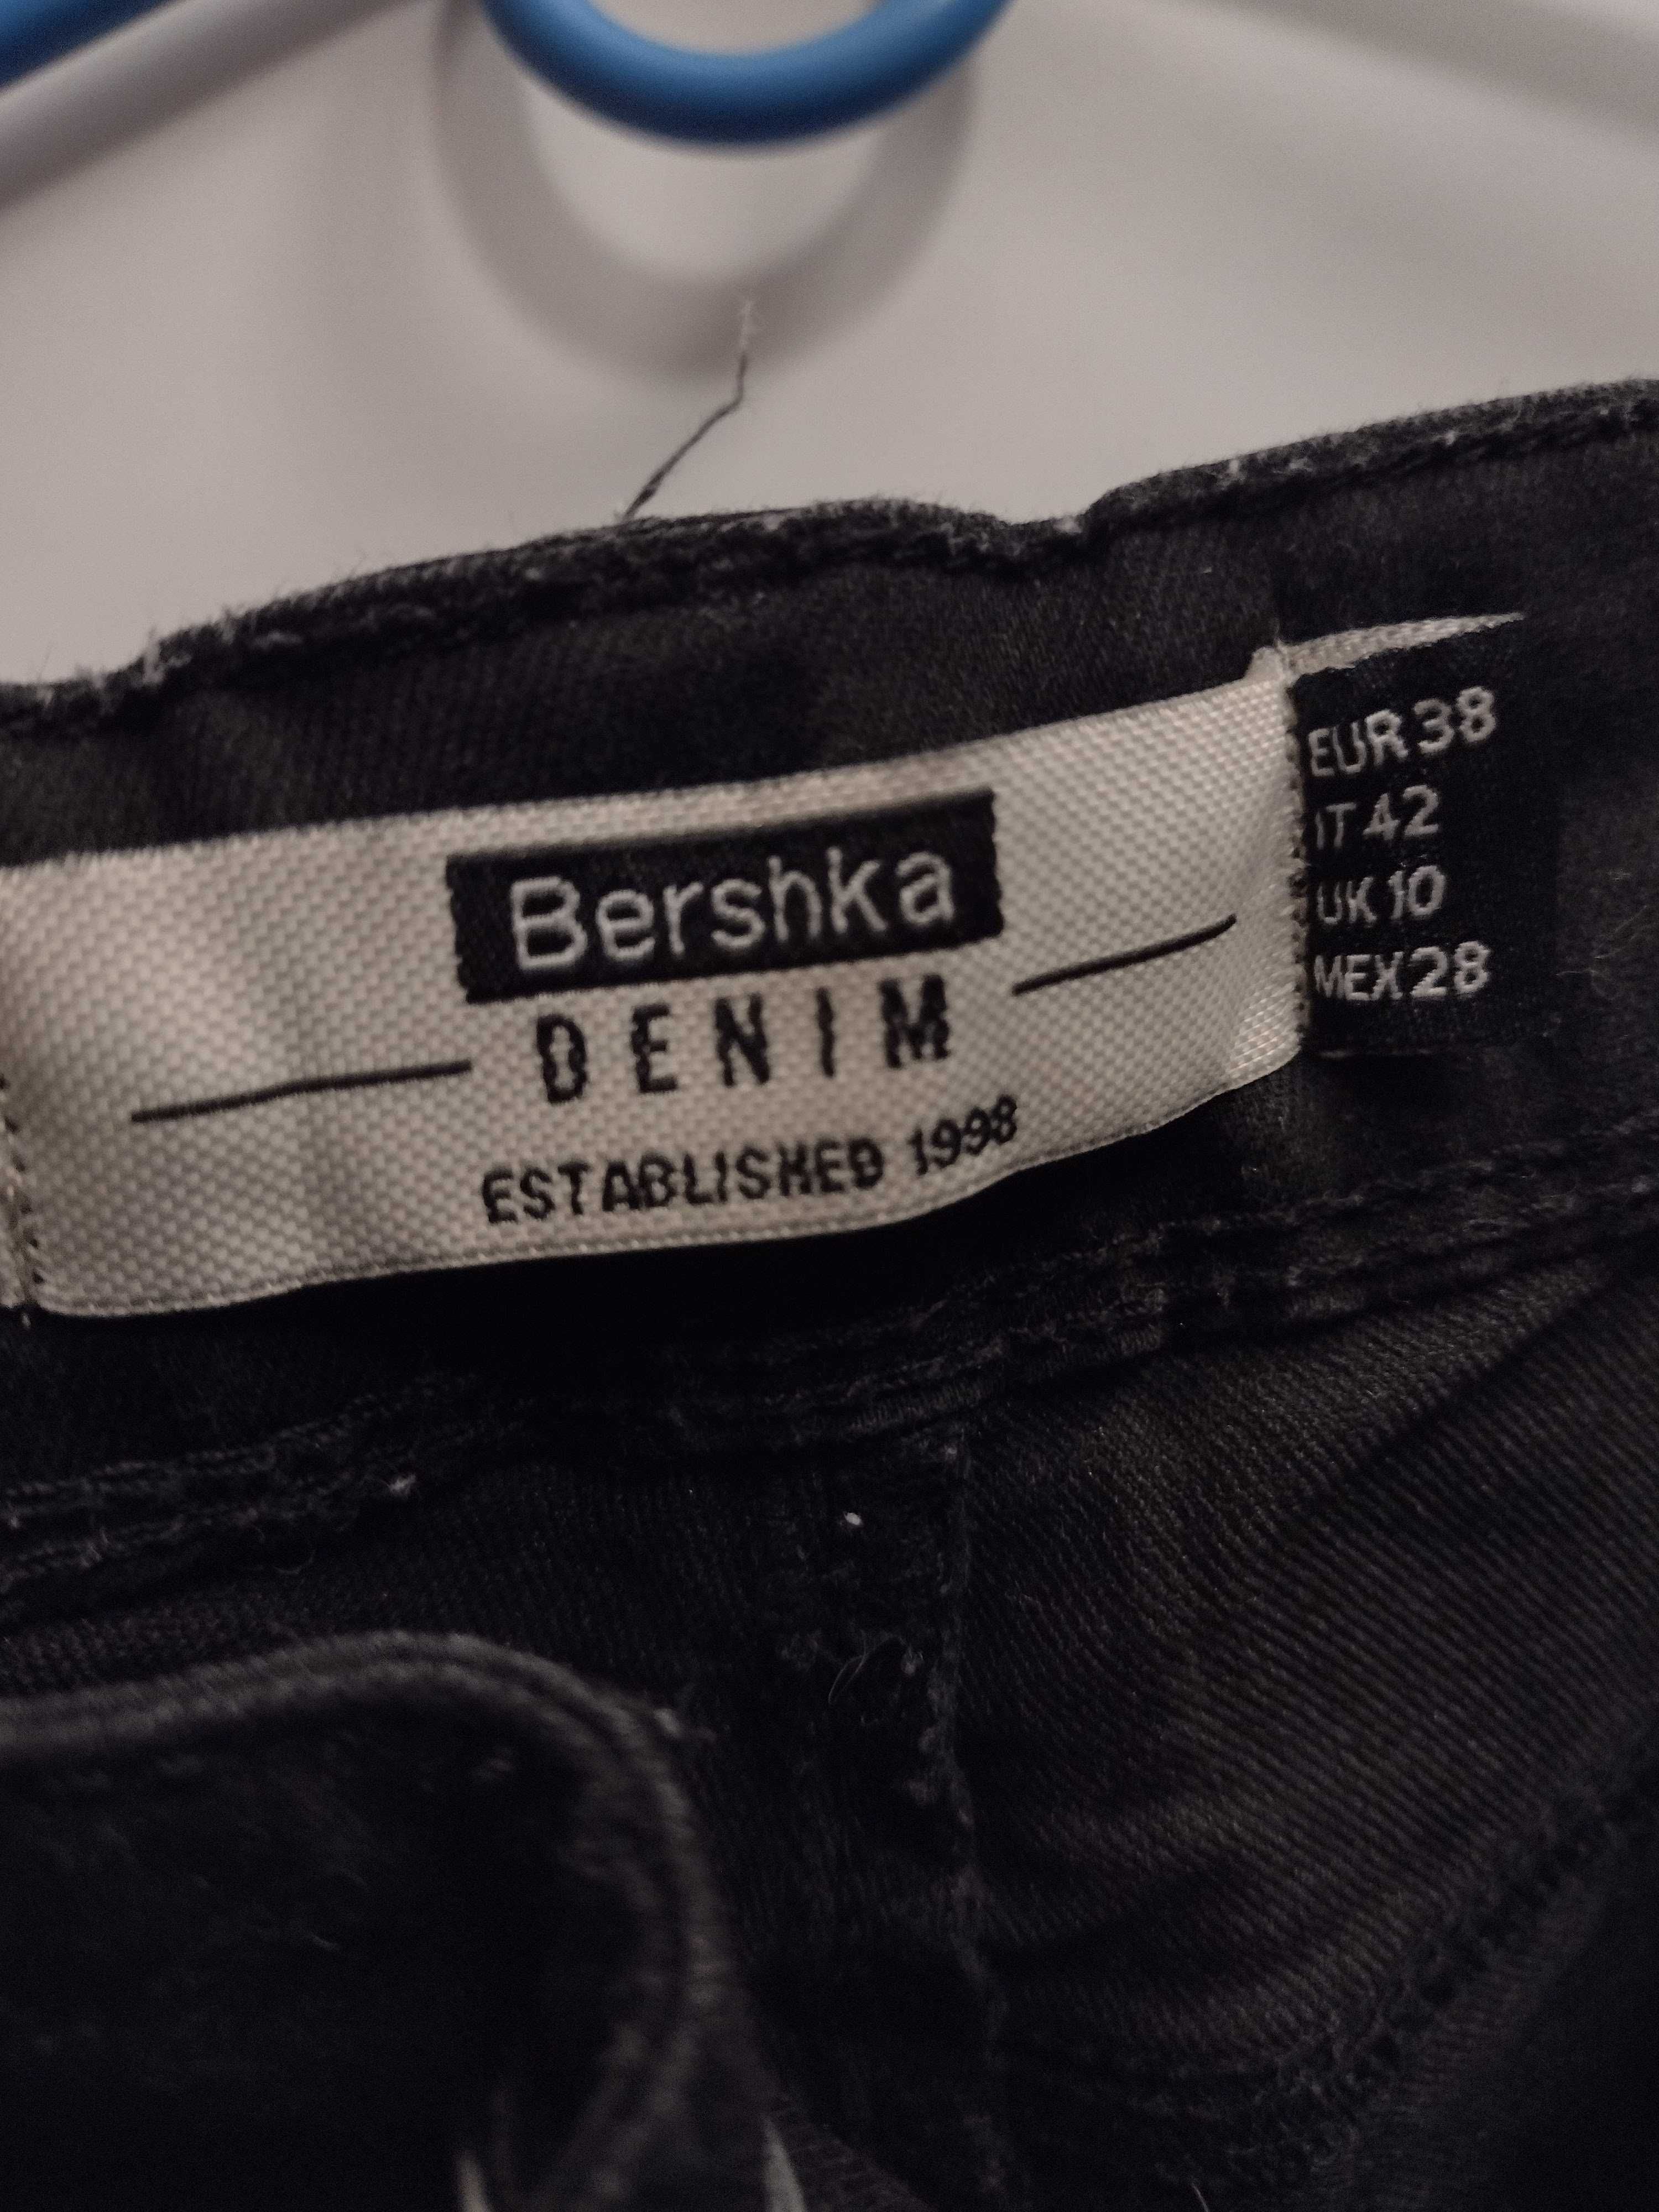 Sprzedam czarne damskie spodnie firmy BERSHKA rozm. 38